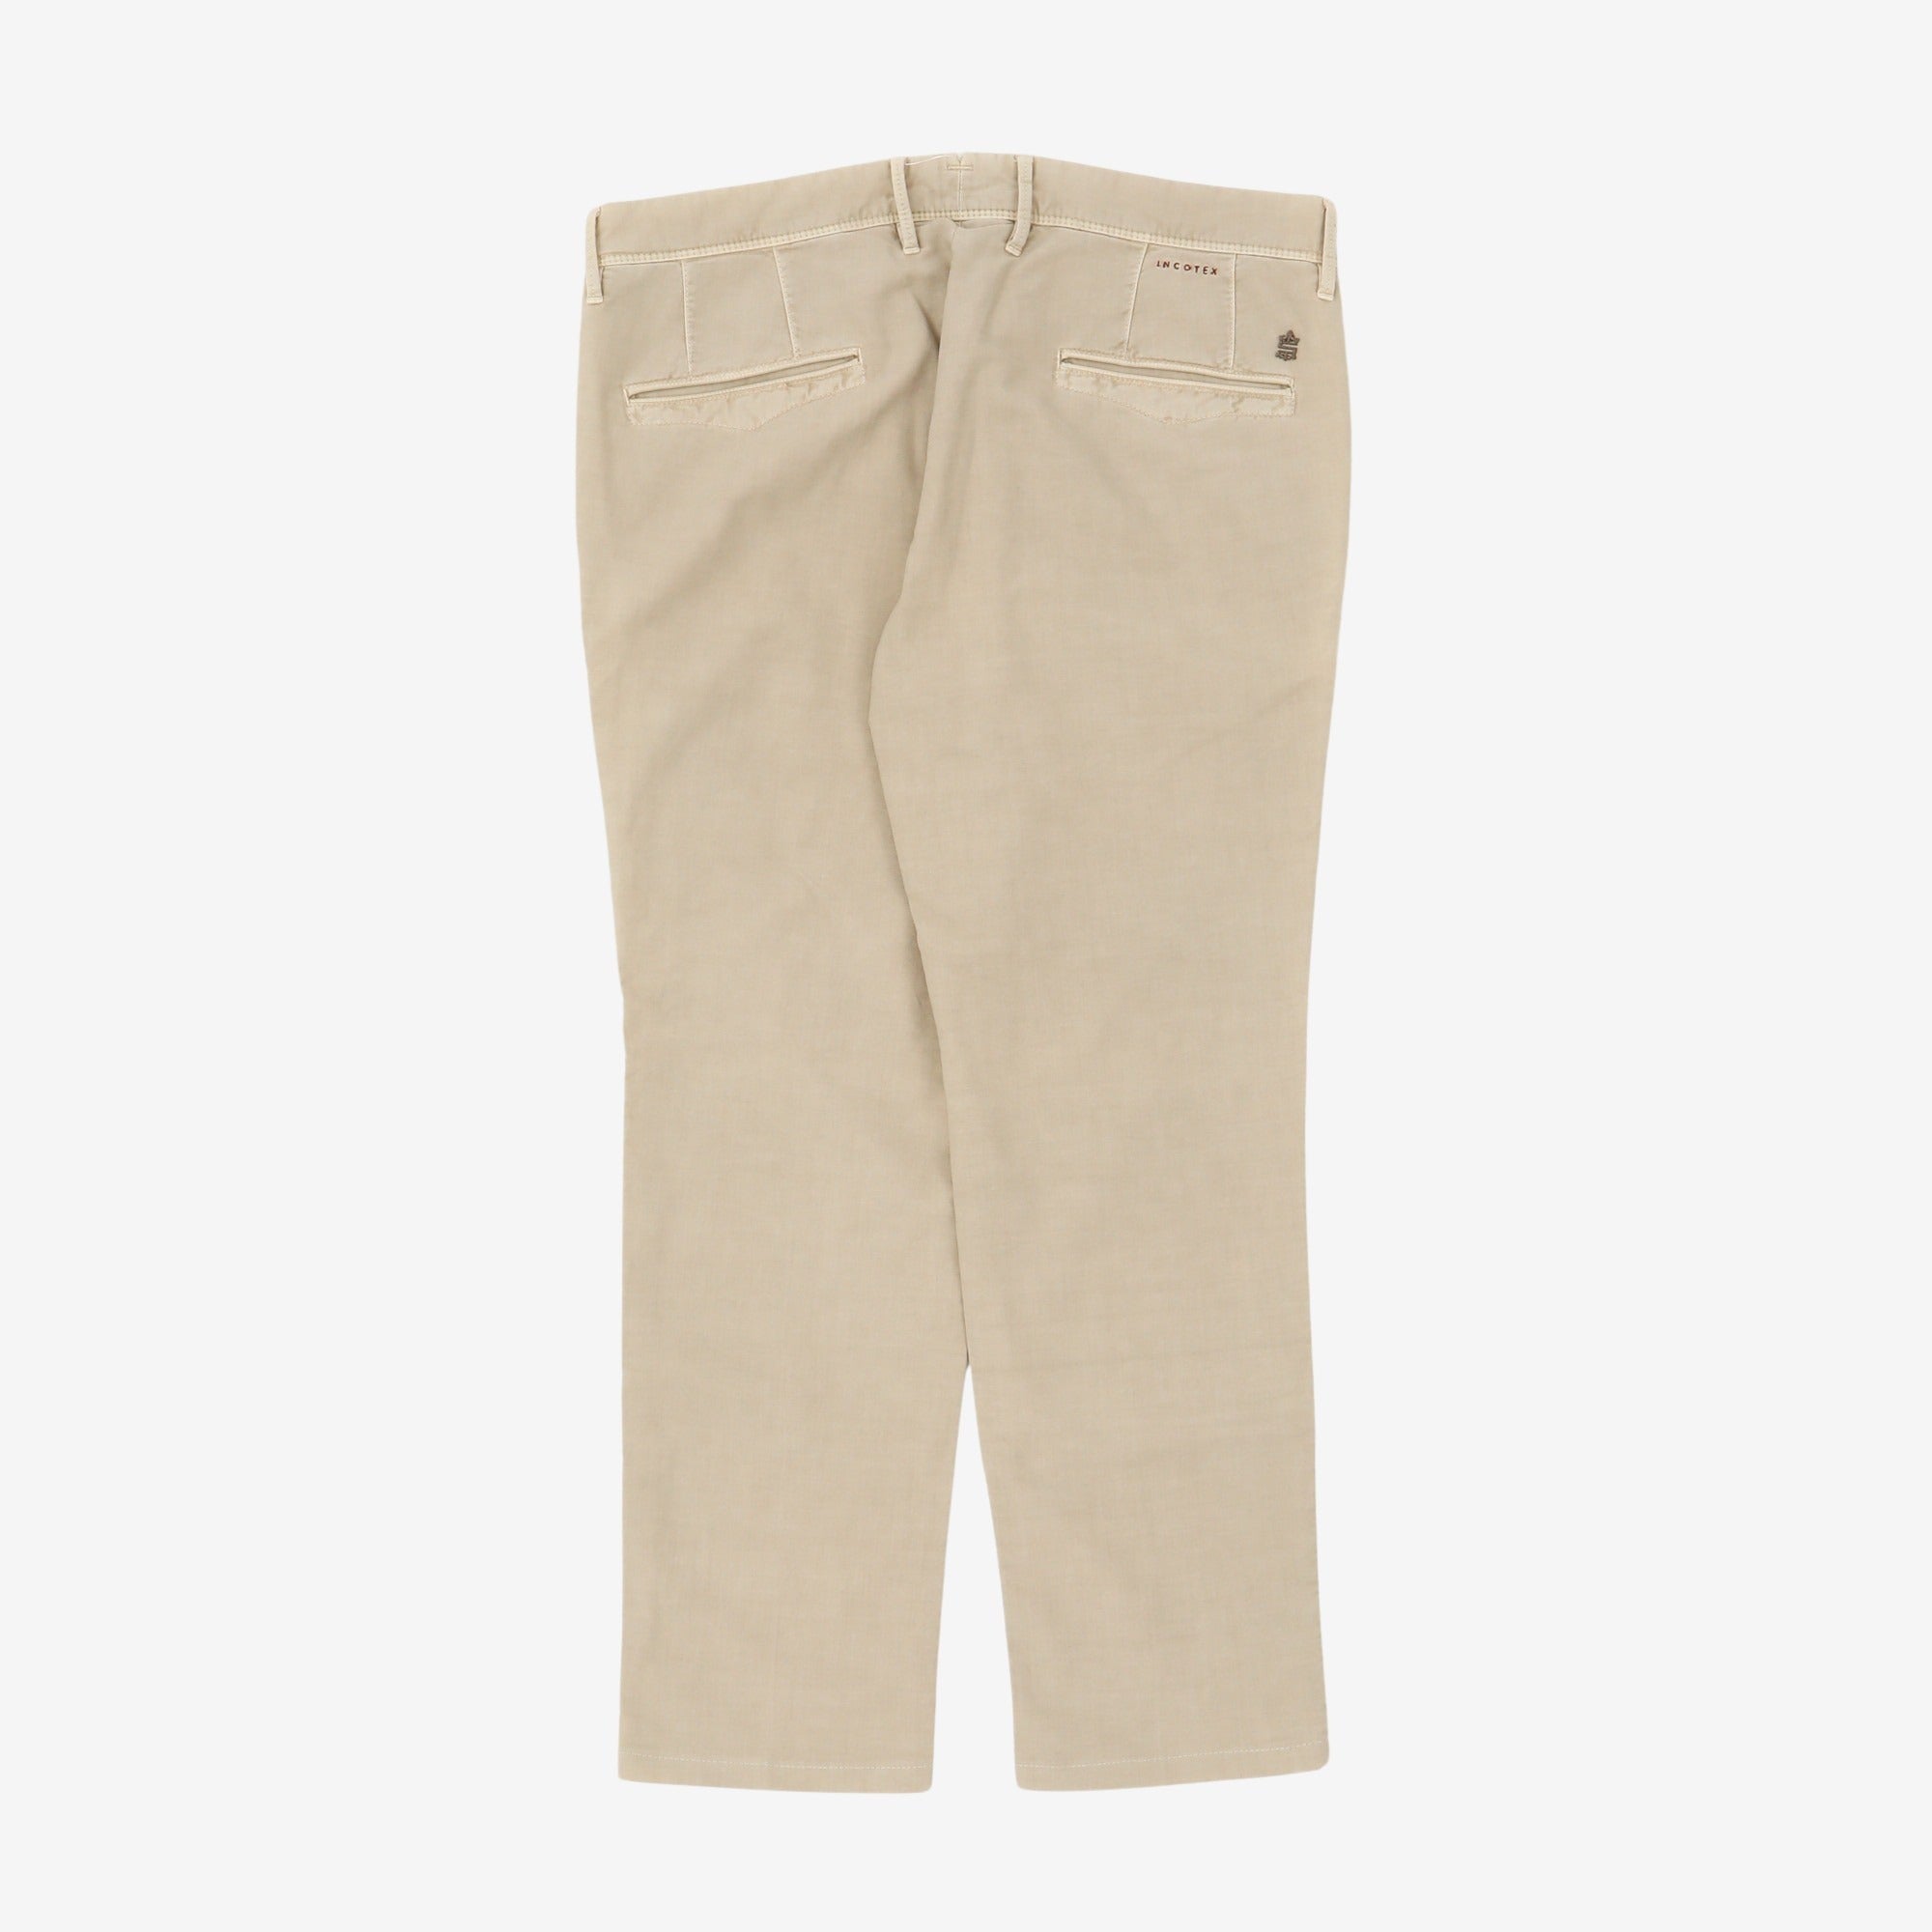 Slim Fit Chino Trousers (36W x 28L)